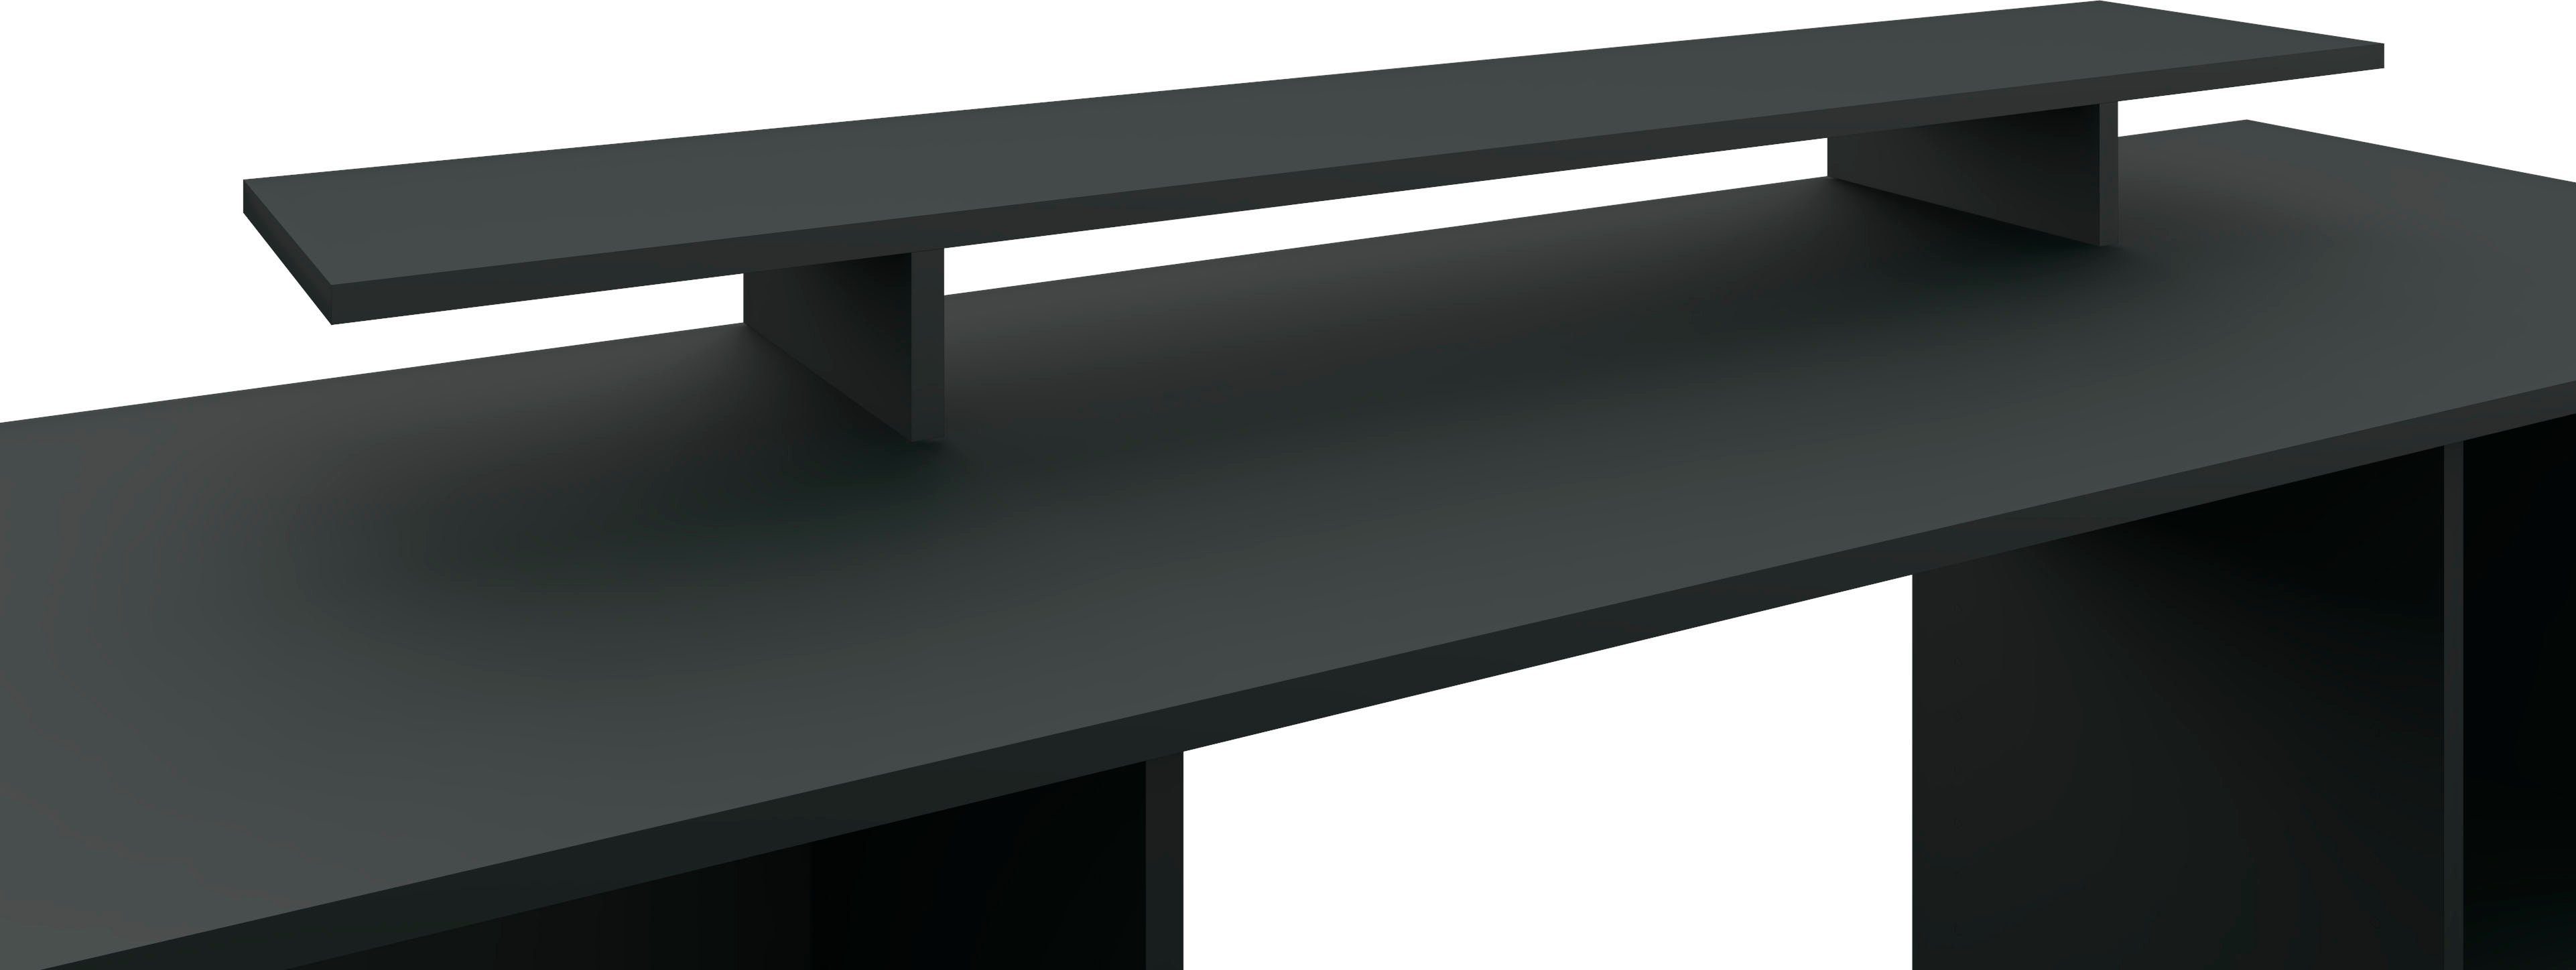 Schreibtischaufsatz in Germany Design, schwarz-matt Made Monitorständer, modernen Bildschirmerhöhung im Möbel Kai, borchardt